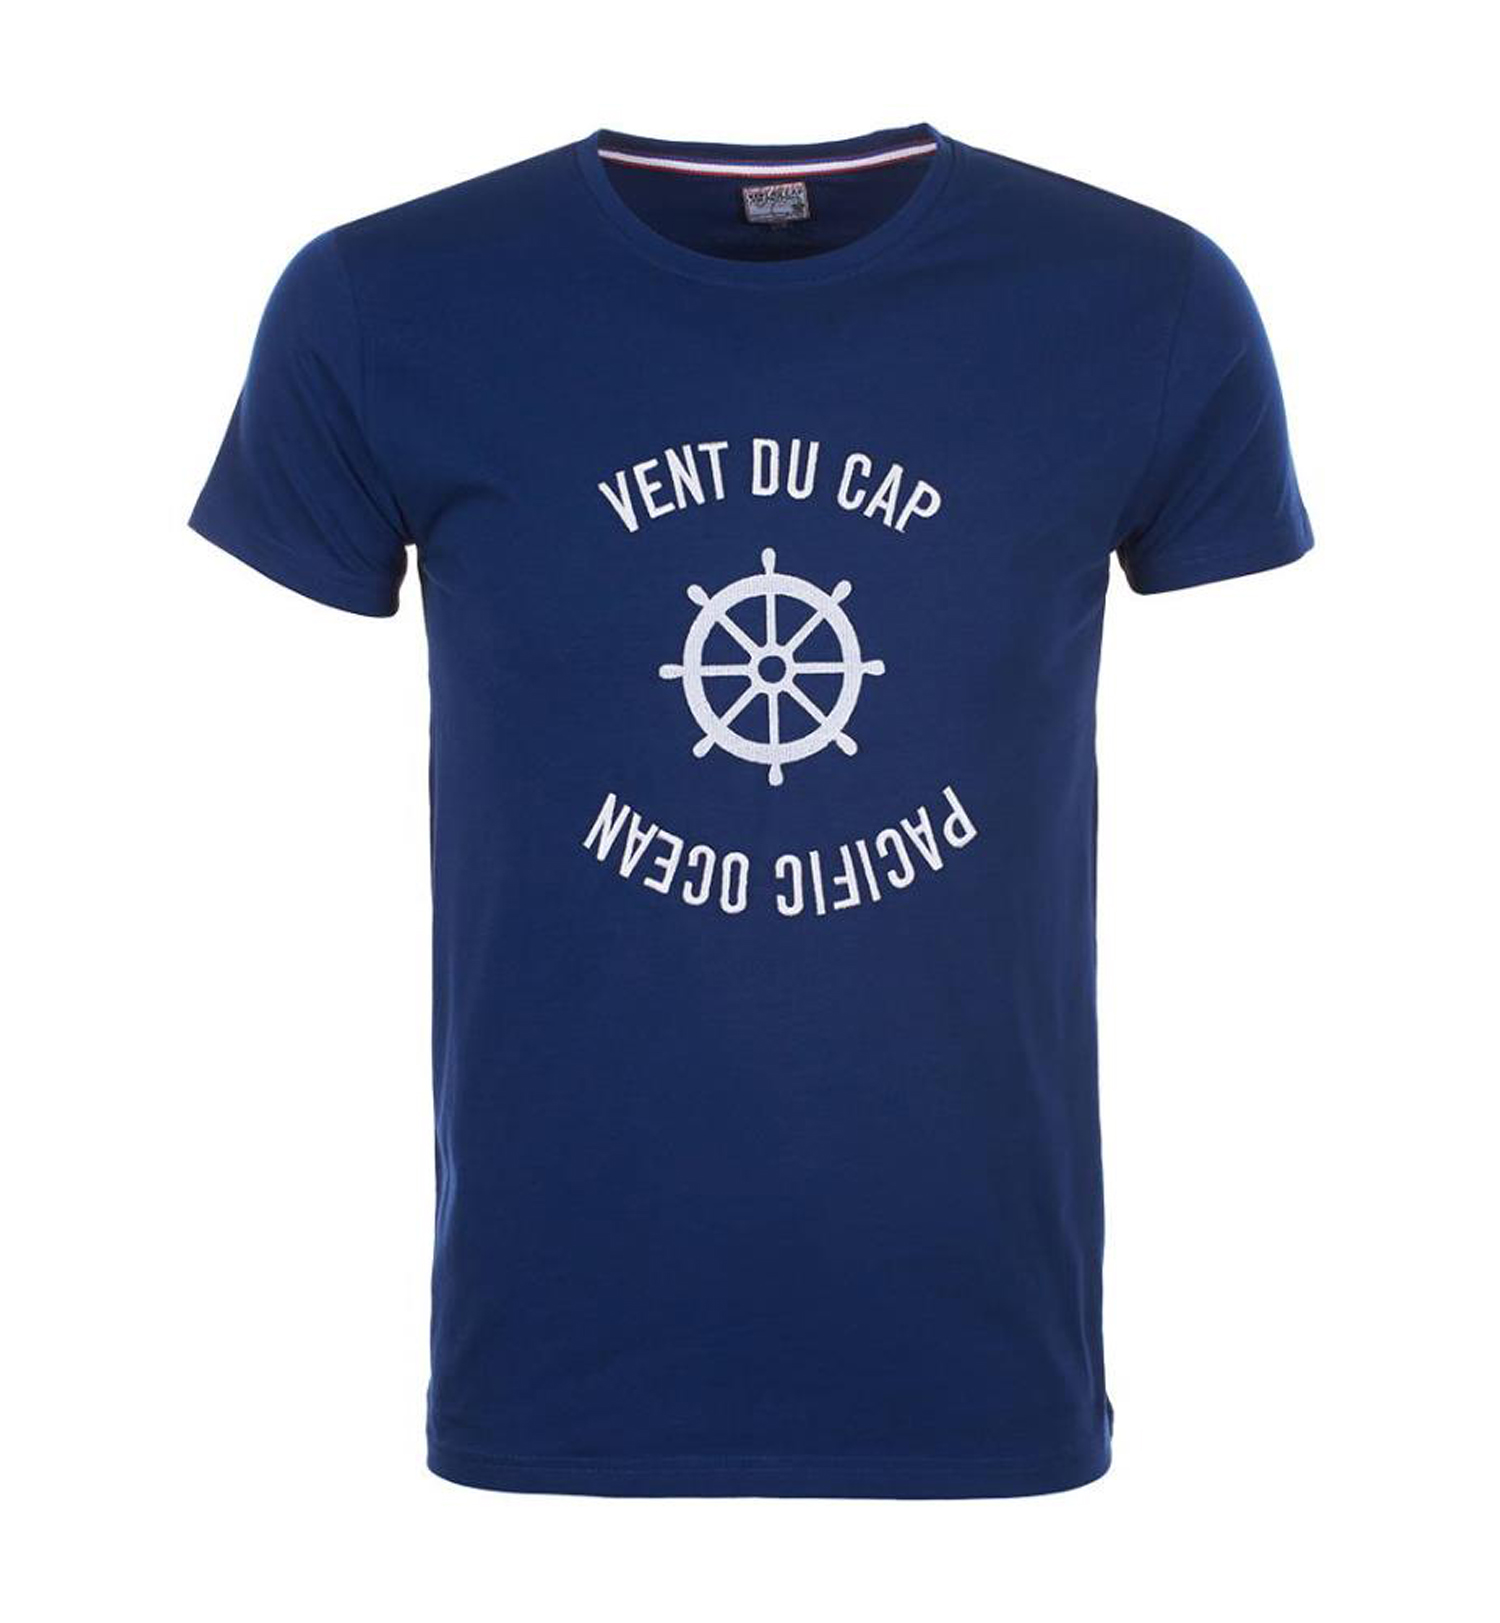 Tee-shirt Vent du cap garçon 10-16 ans ECHERYL marine